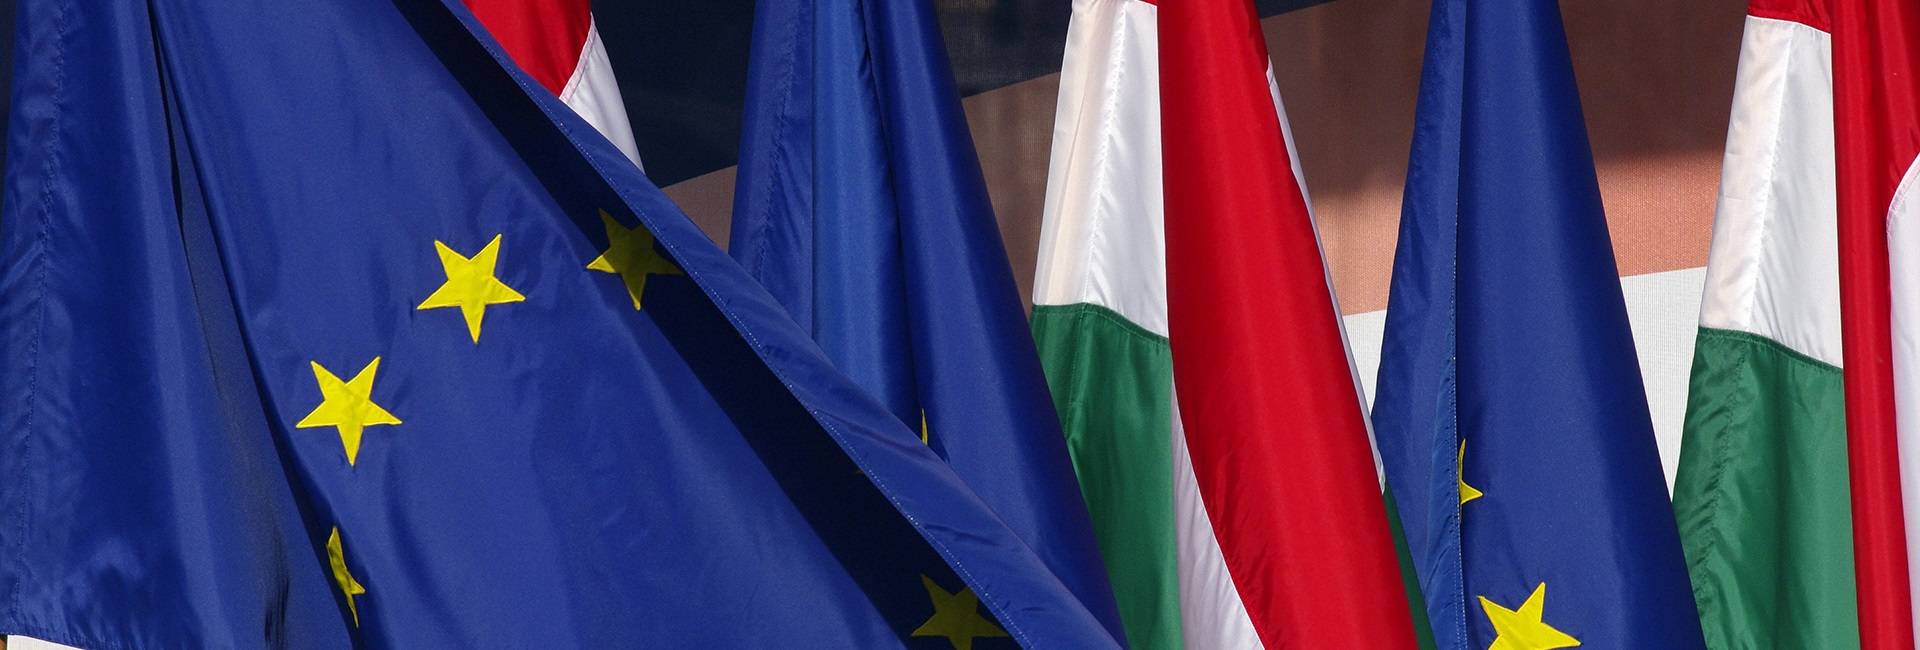 Евросоюзу надоел Орбан: Венгрия может уйти